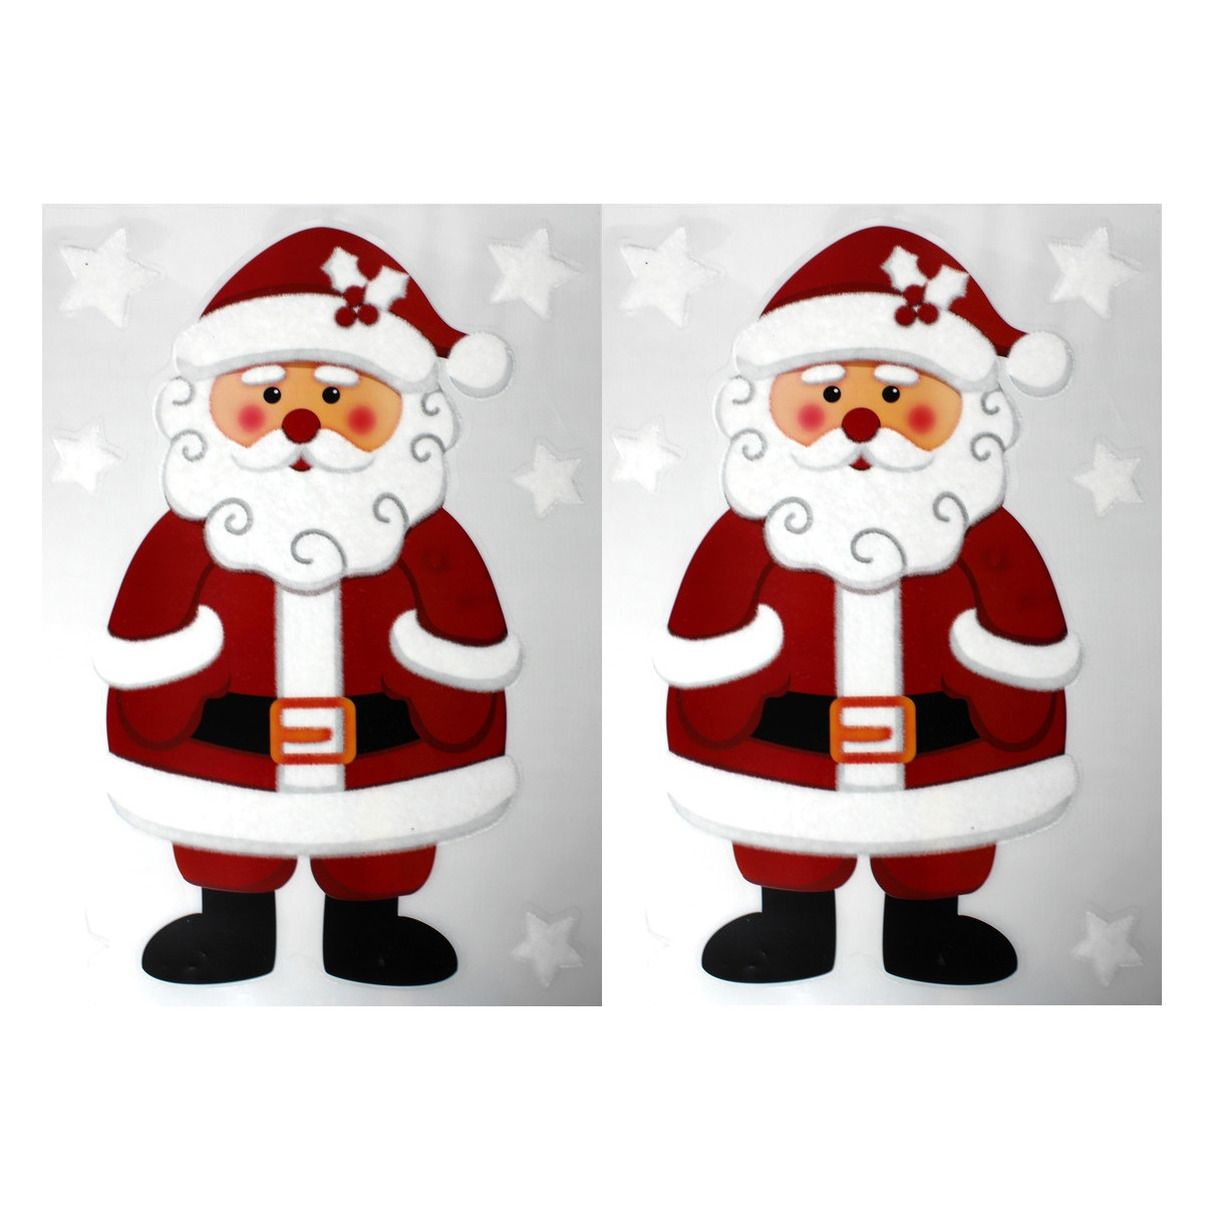 2x Kinderkamer kerst raamstickers kerstman 28,5 x 40 cm